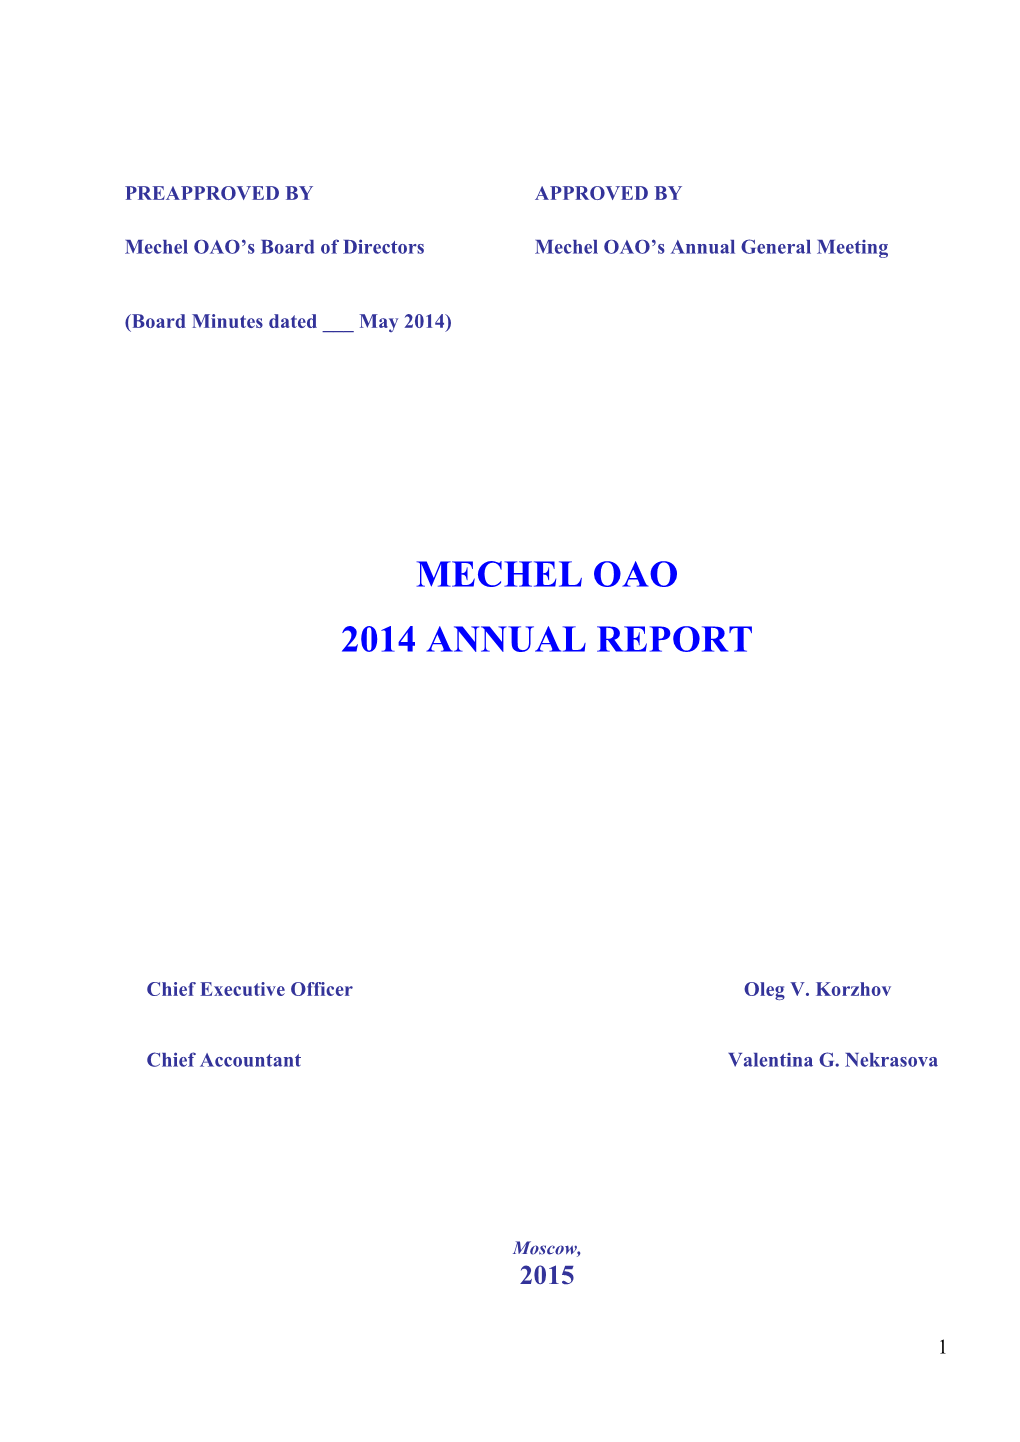 Mechel Oao 2014 Annual Report